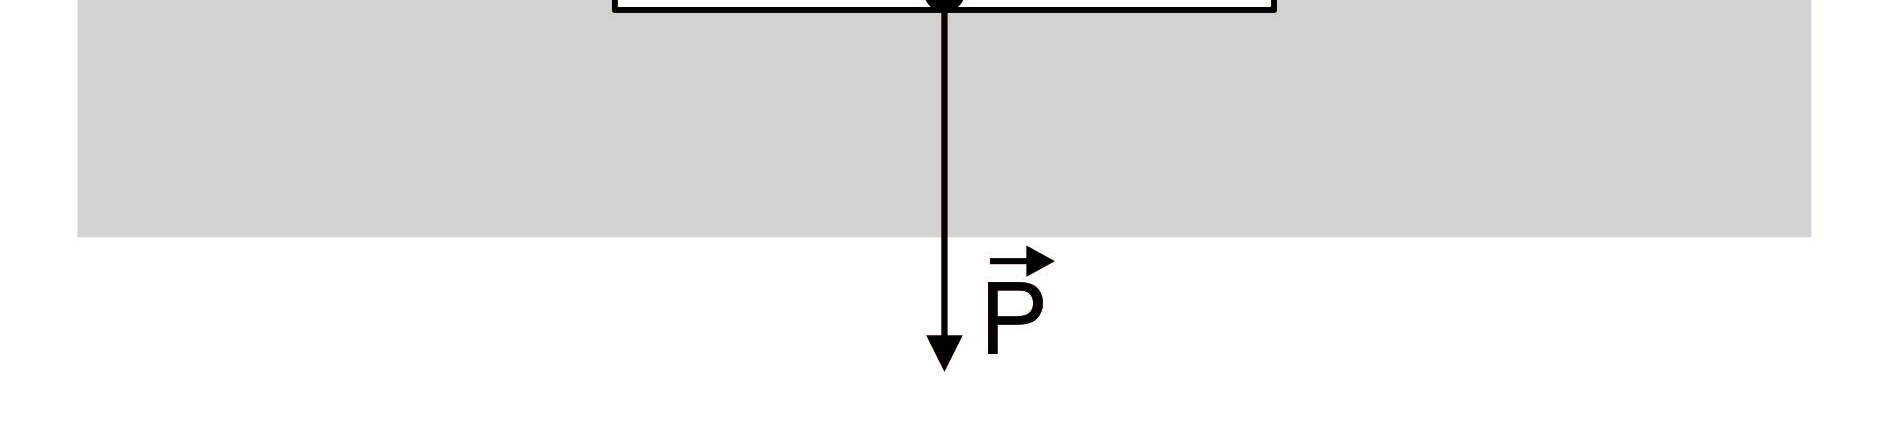 E V : parcela do empuxo devido aos vazios E F : parcela do empuxo devido ao fundo do recipiente V A E = P E + E = P F F d